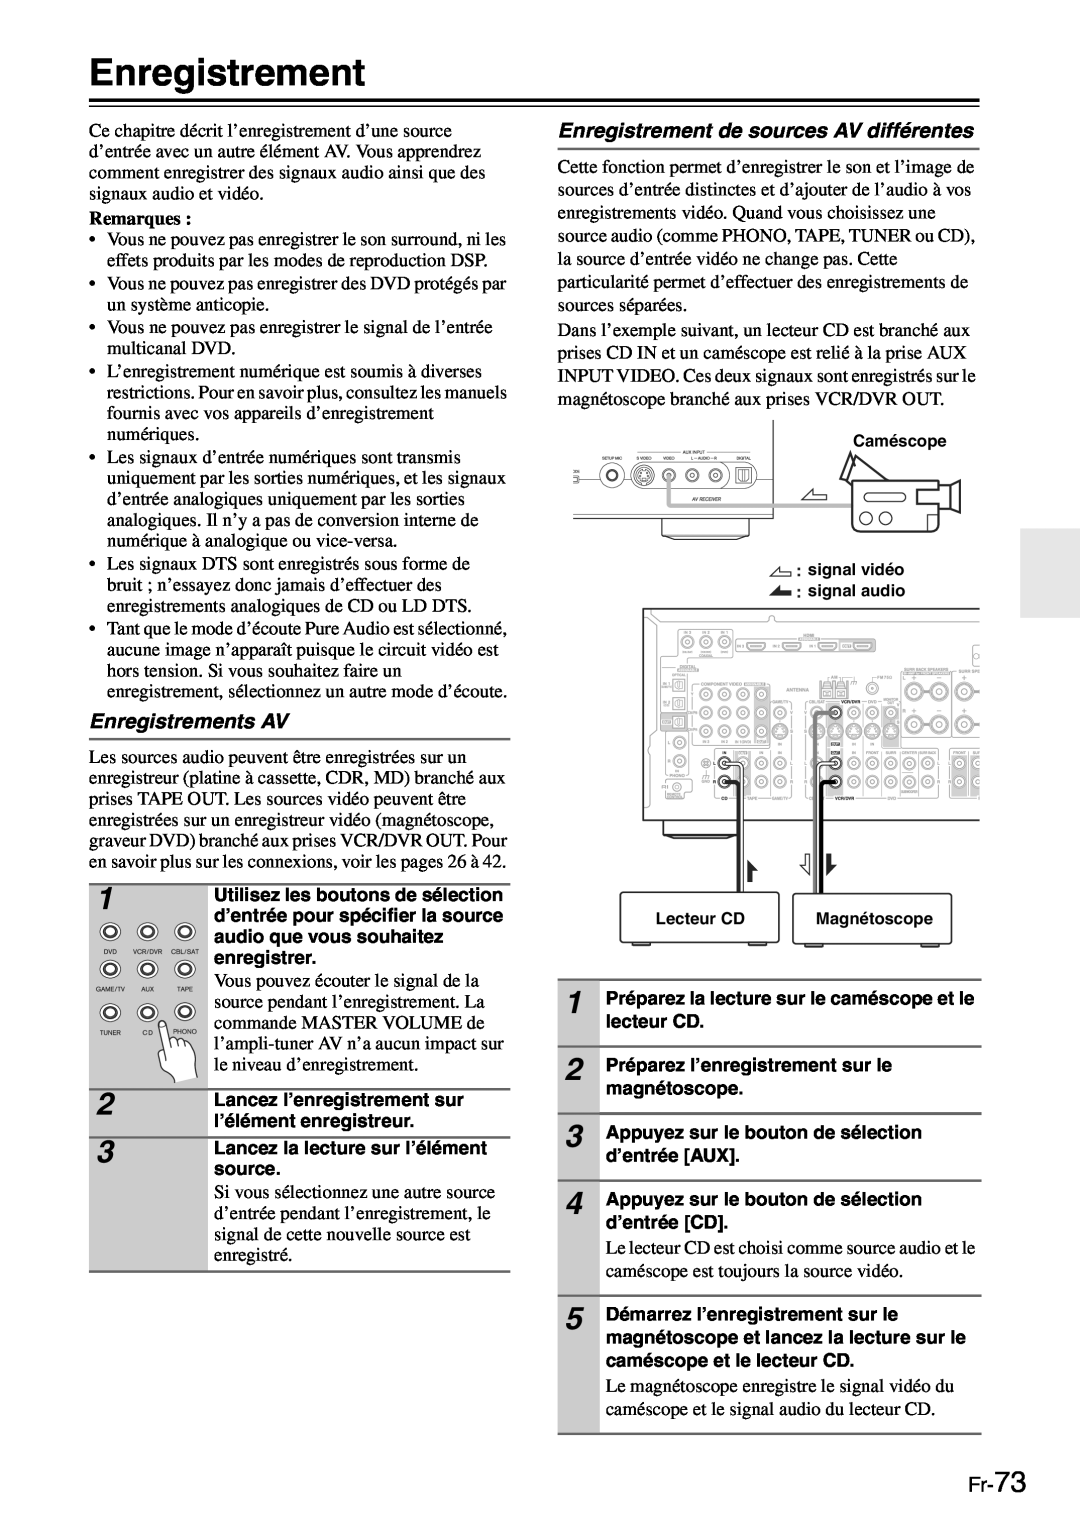 Onkyo TX-SR705 manual Enregistrements AV, Enregistrement de sources AV différentes, Fr-73, Remarques 